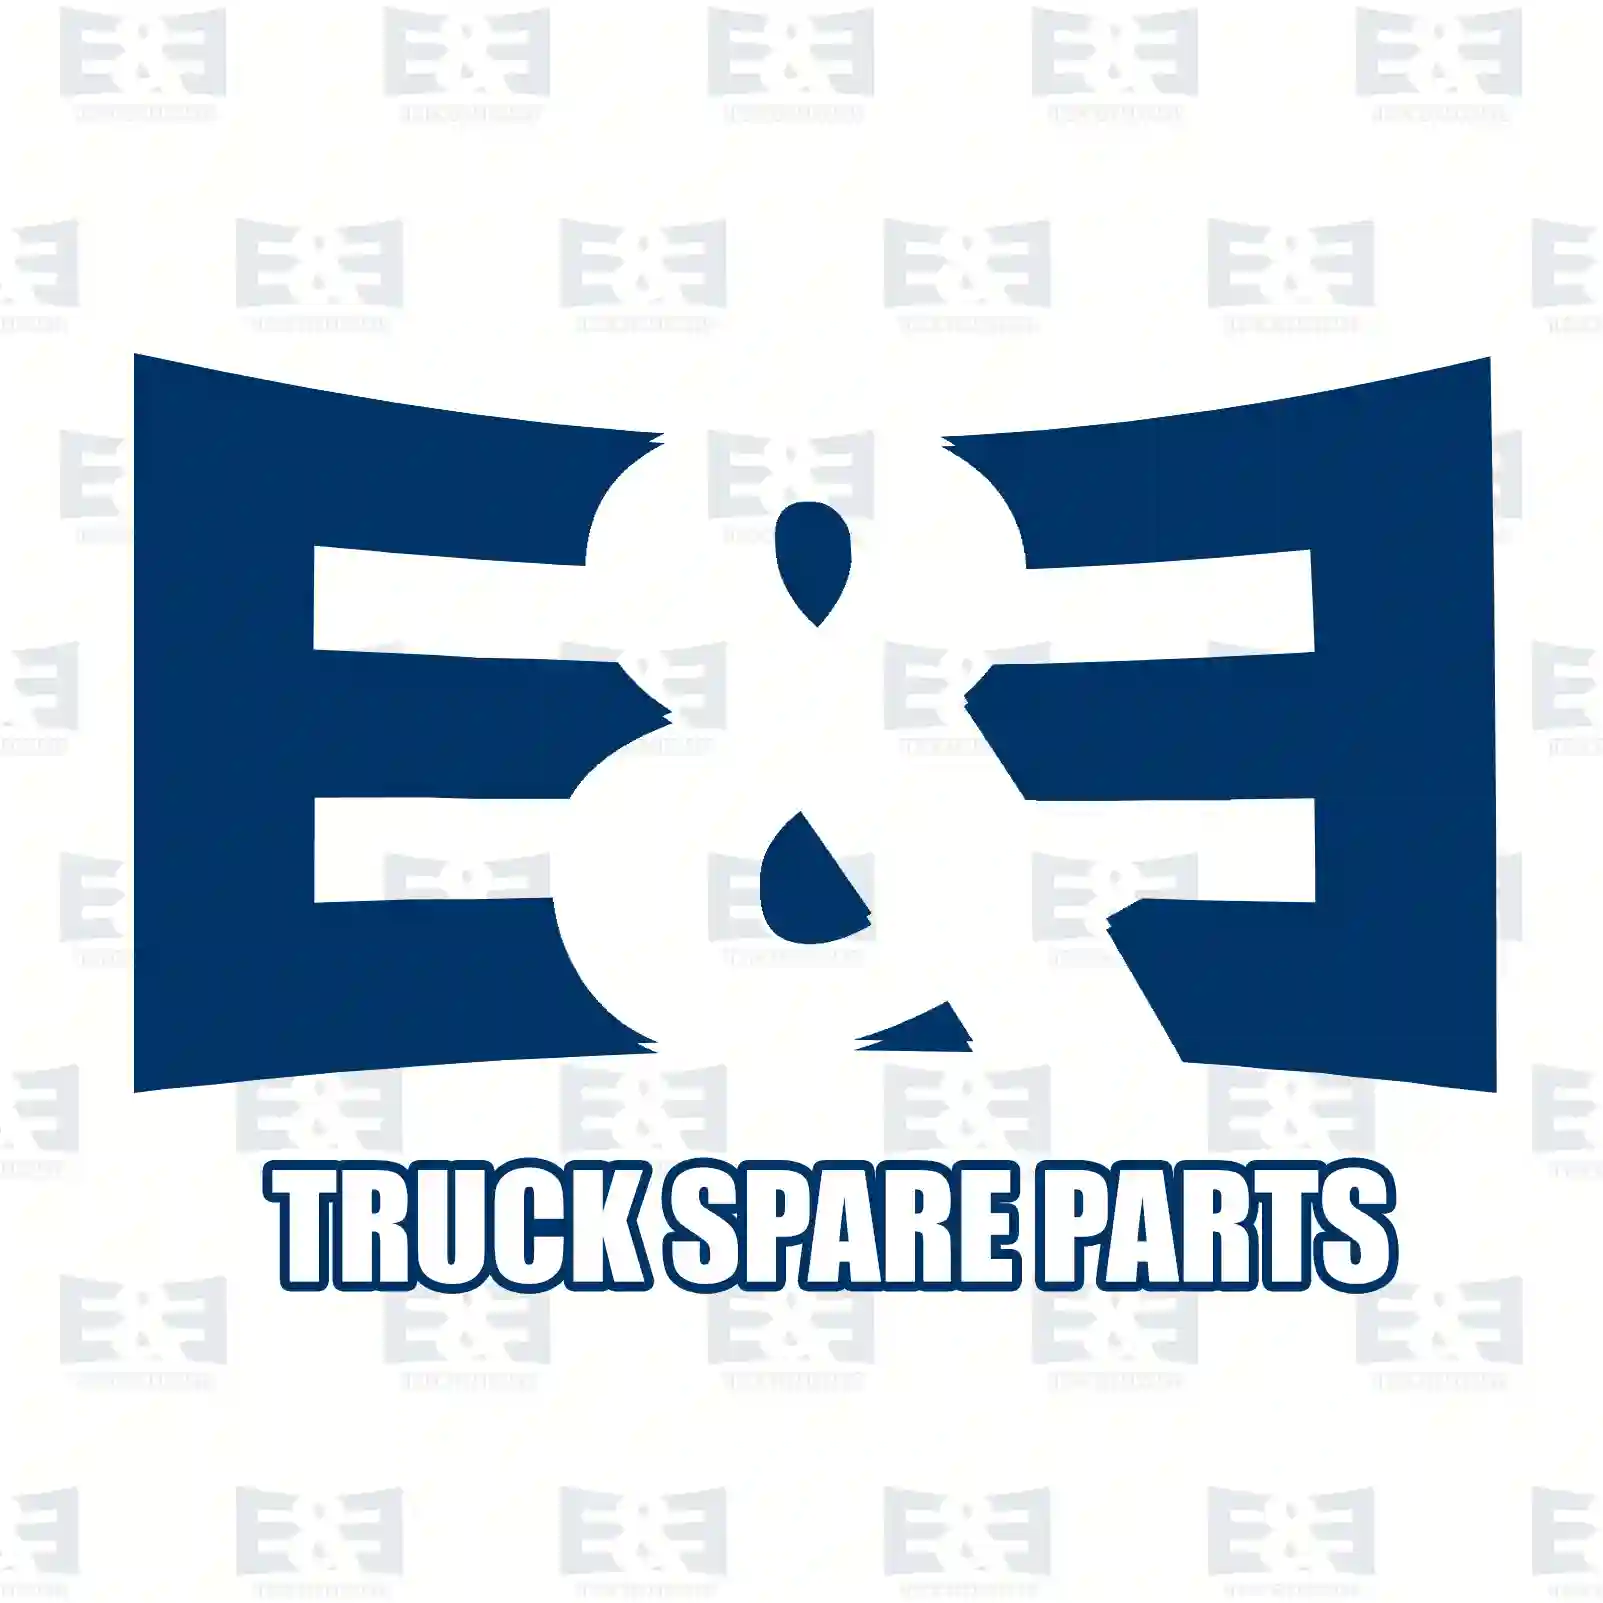 Brake drum, 2E2293720, 21209701, , , , , , ||  2E2293720 E&E Truck Spare Parts | Truck Spare Parts, Auotomotive Spare Parts Brake drum, 2E2293720, 21209701, , , , , , ||  2E2293720 E&E Truck Spare Parts | Truck Spare Parts, Auotomotive Spare Parts